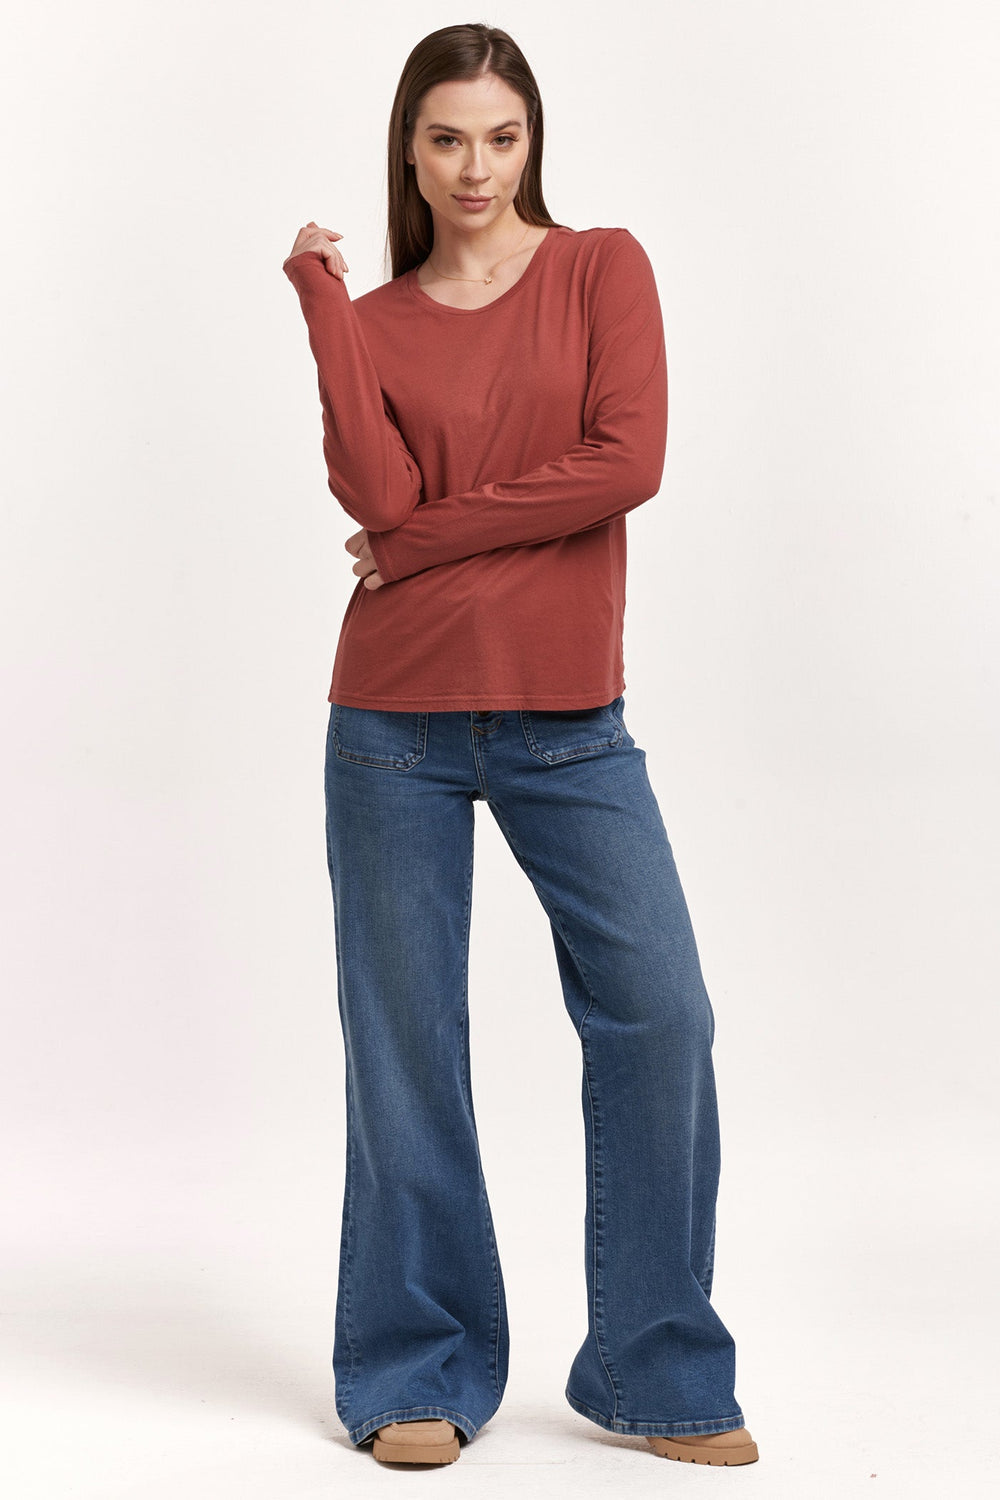 image of a female model wearing a KATHY LONG SLEEVE JERSEY TEE INTENSE RUST DEAR JOHN DENIM 